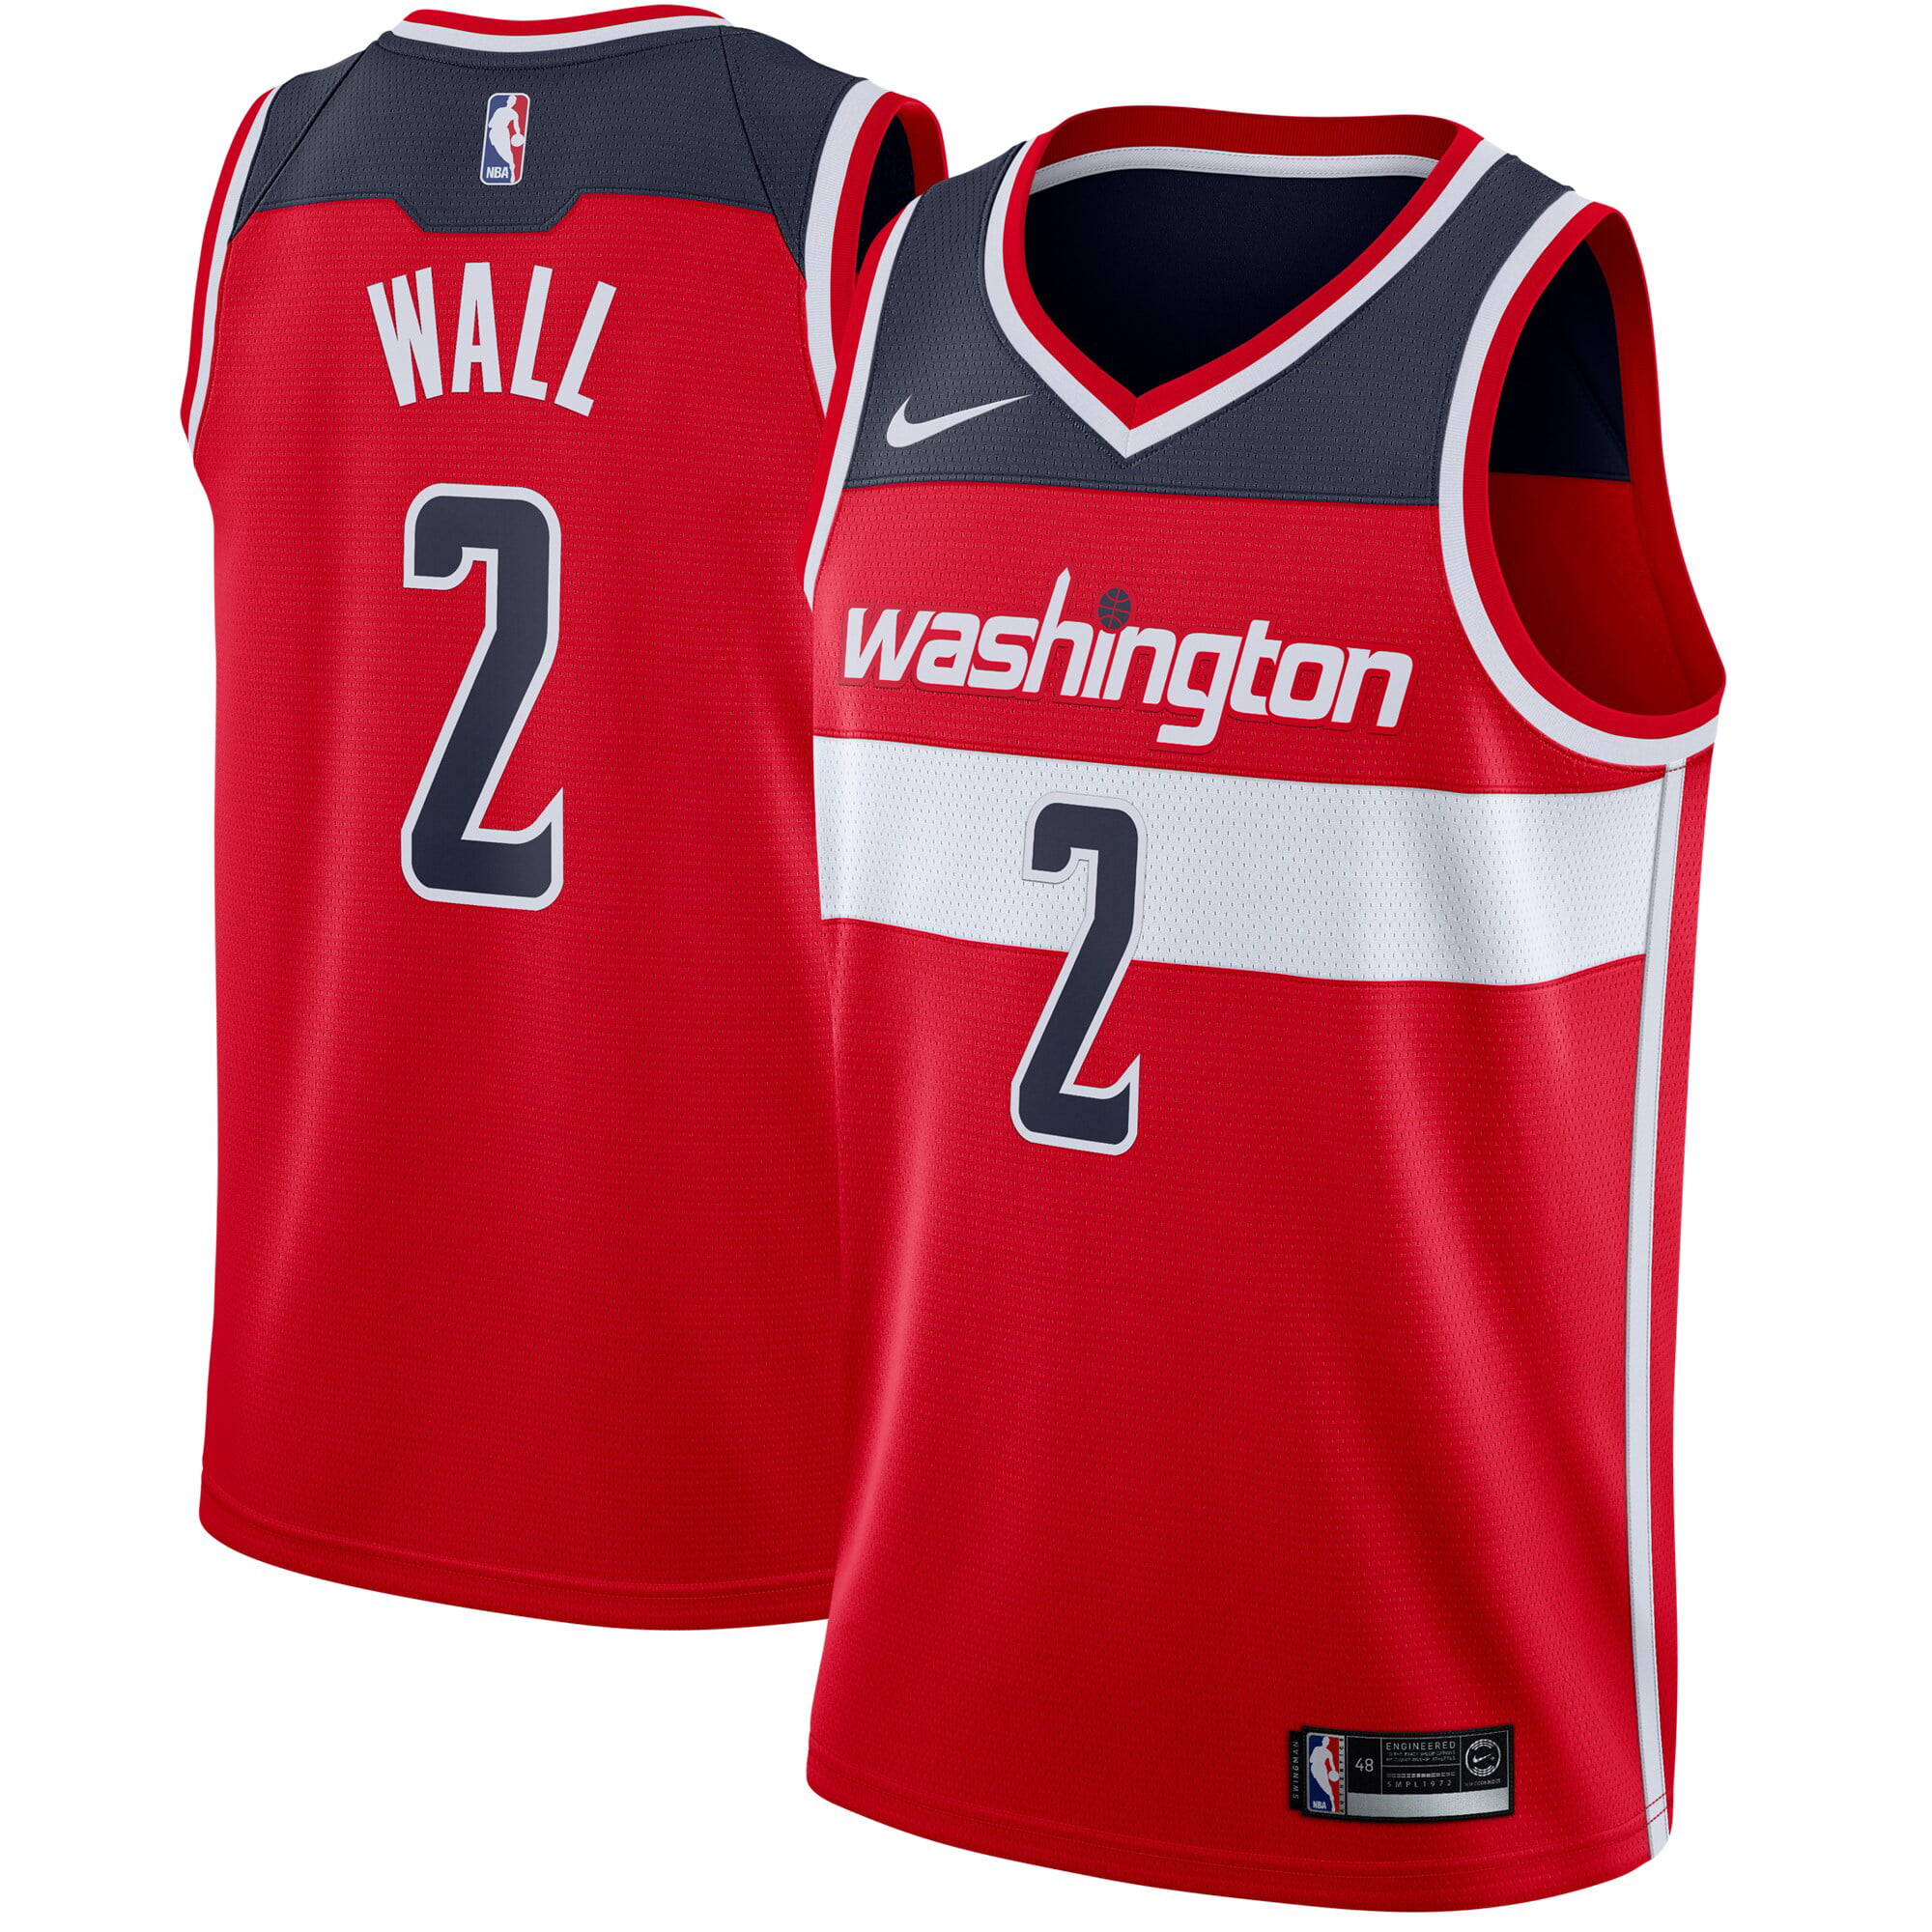 Washington Wizards John Wall Bobblehead Free Shipping 